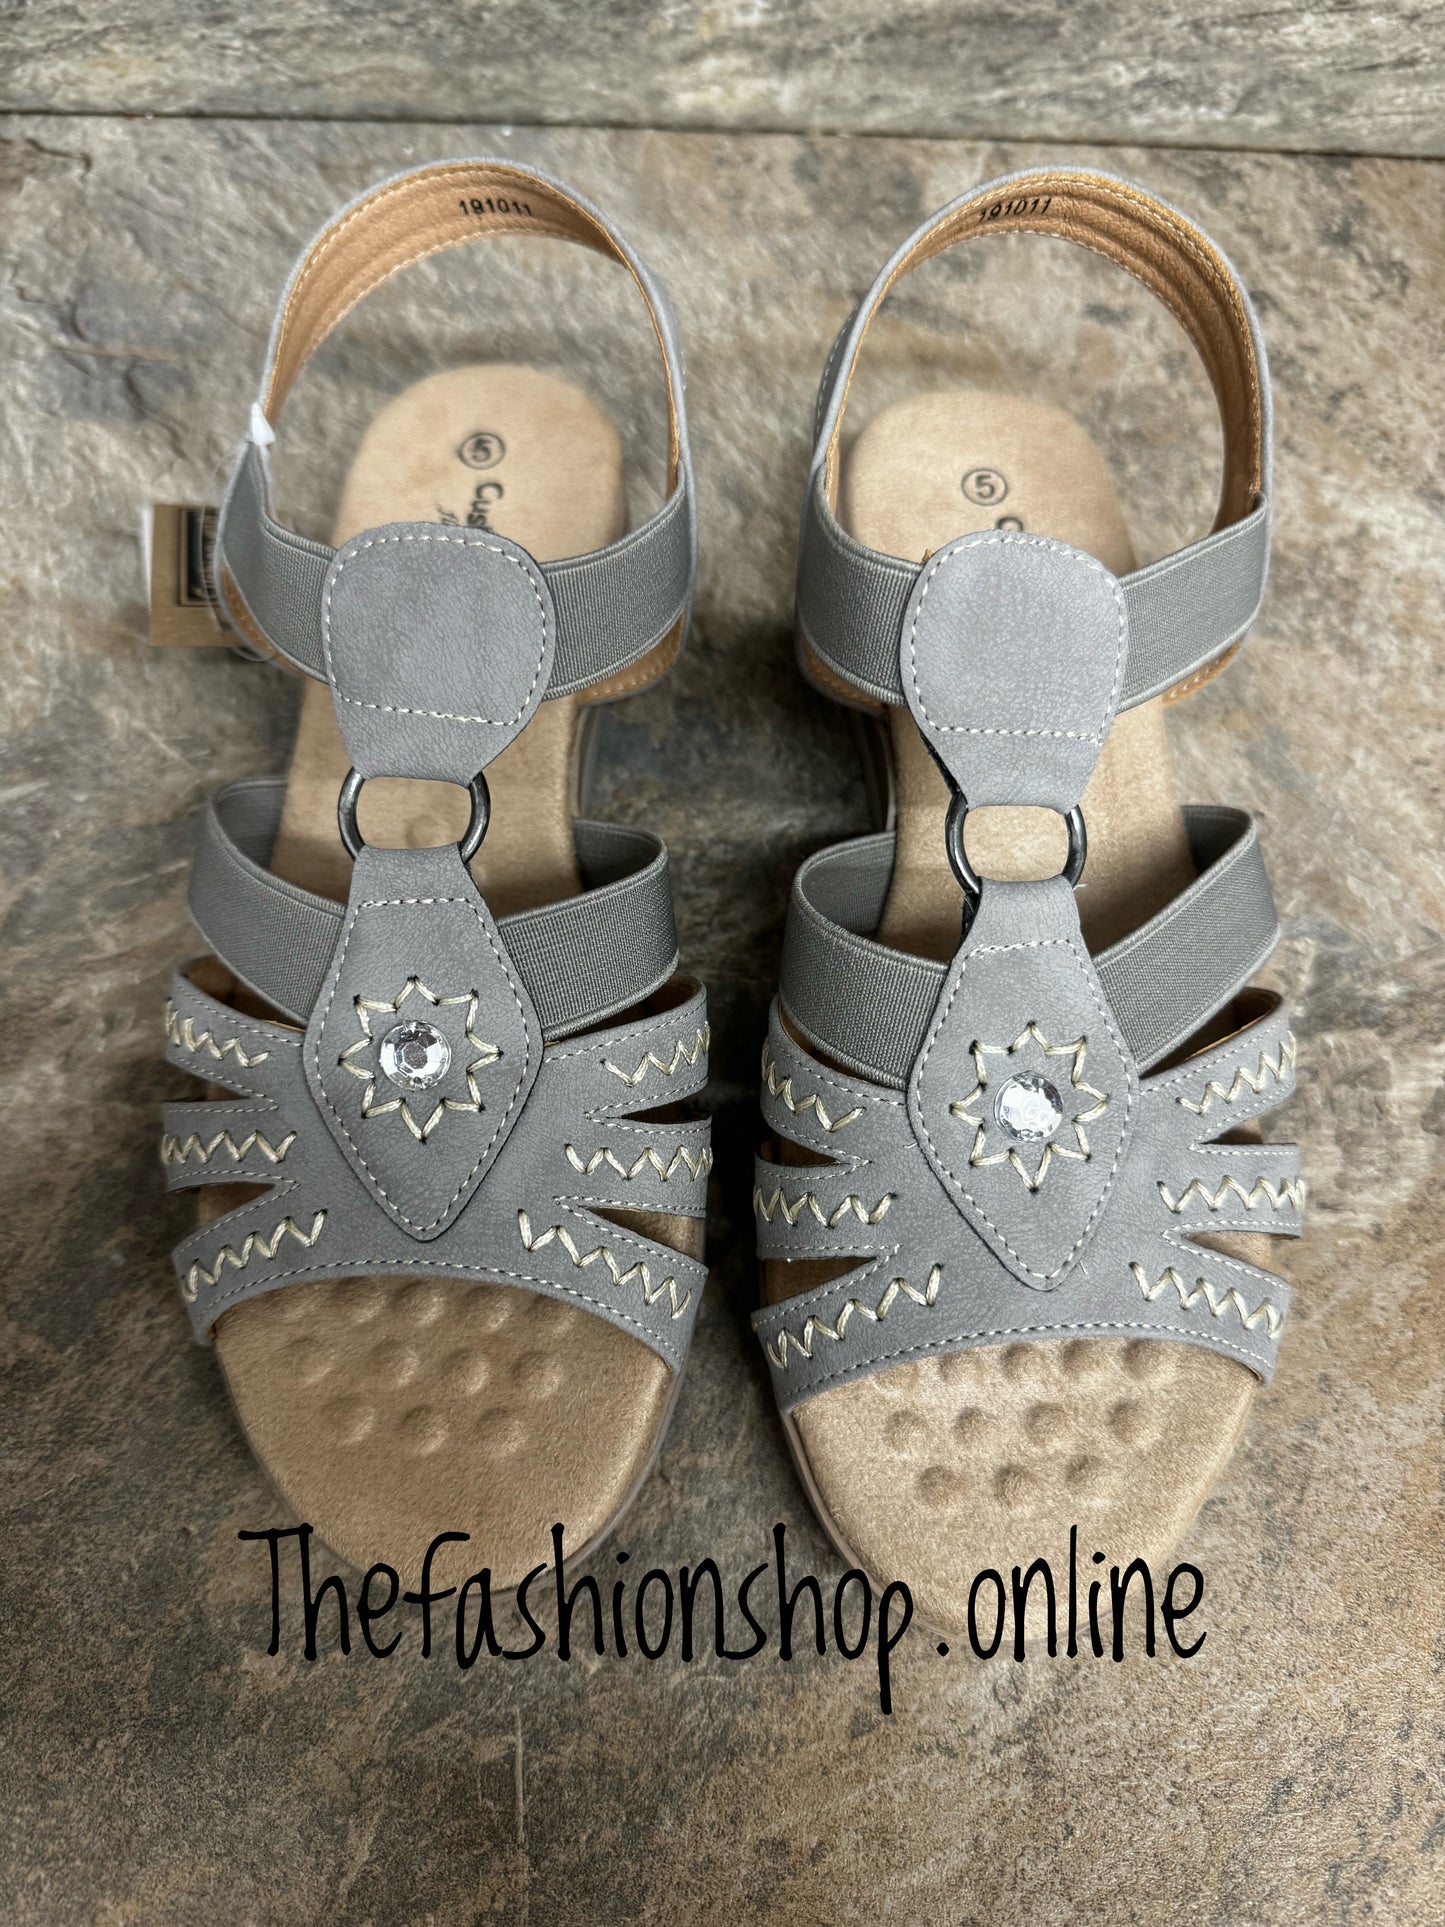 Cushion-walk Lottie grey wide fit sandal sizes 4-8